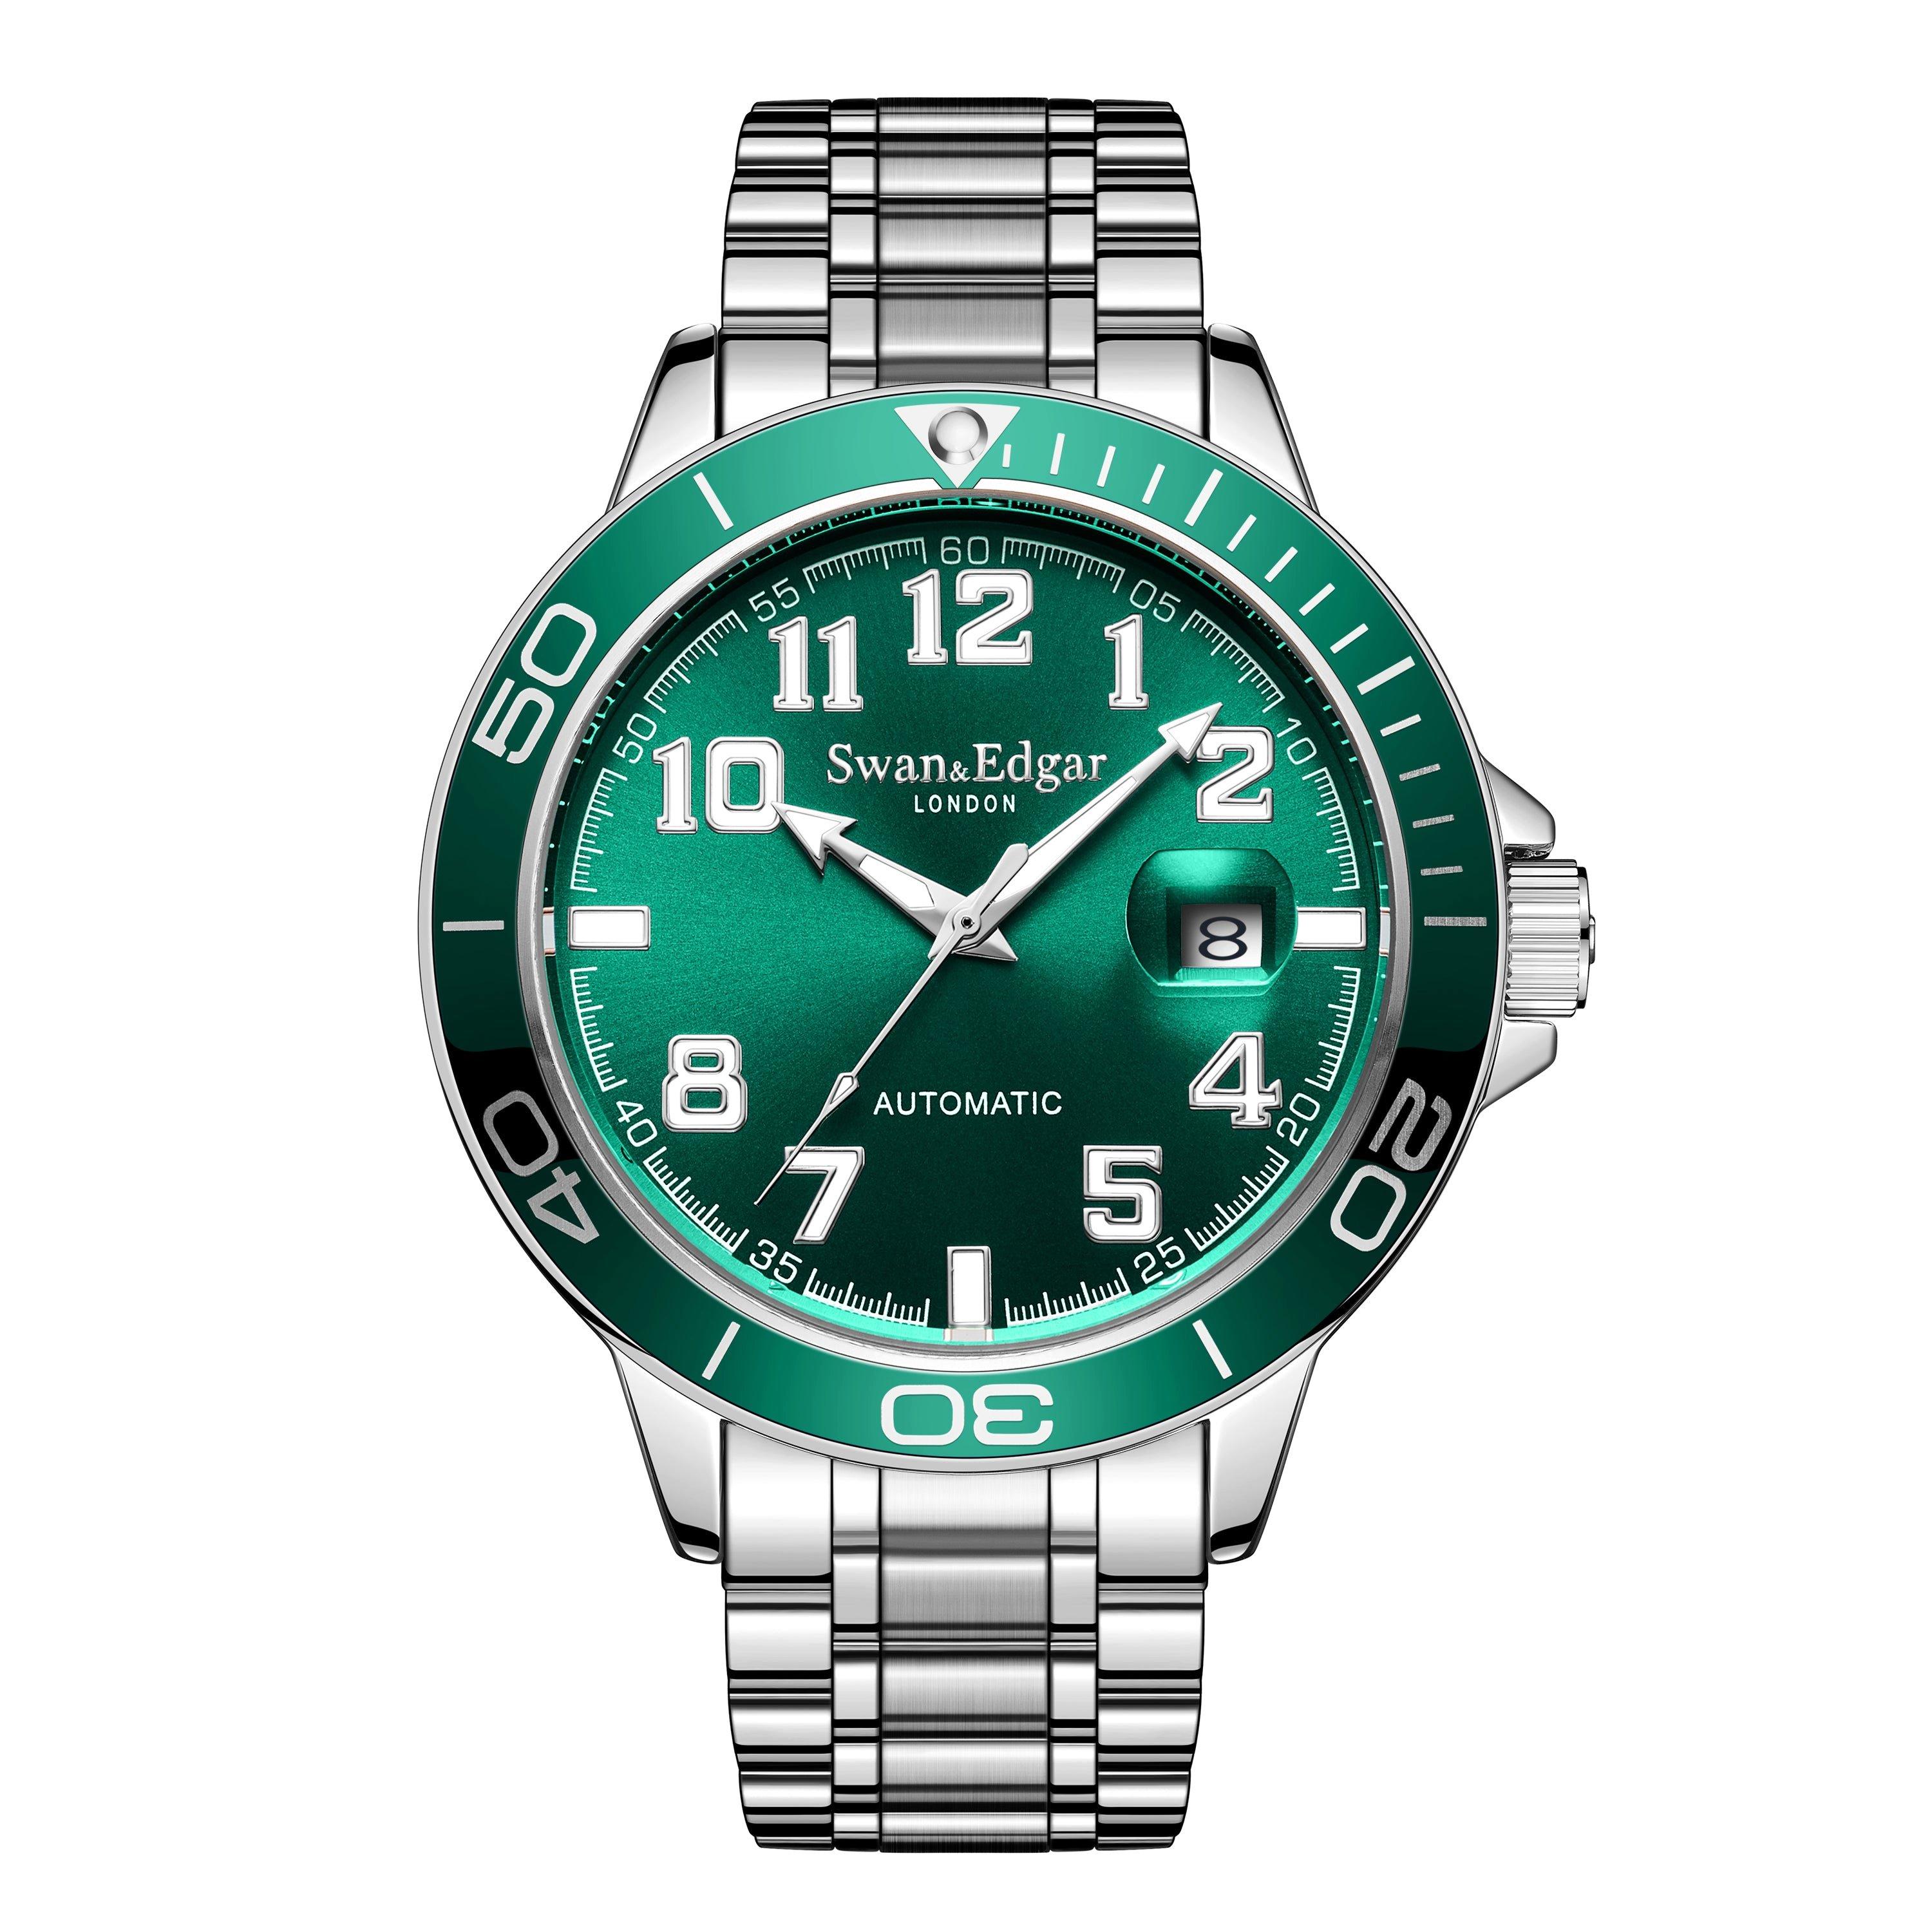 Автоматические часы Conquest ручной сборки Swan & Edgar ограниченной серии, зеленый мужские часы rhythm automatic a1104l01